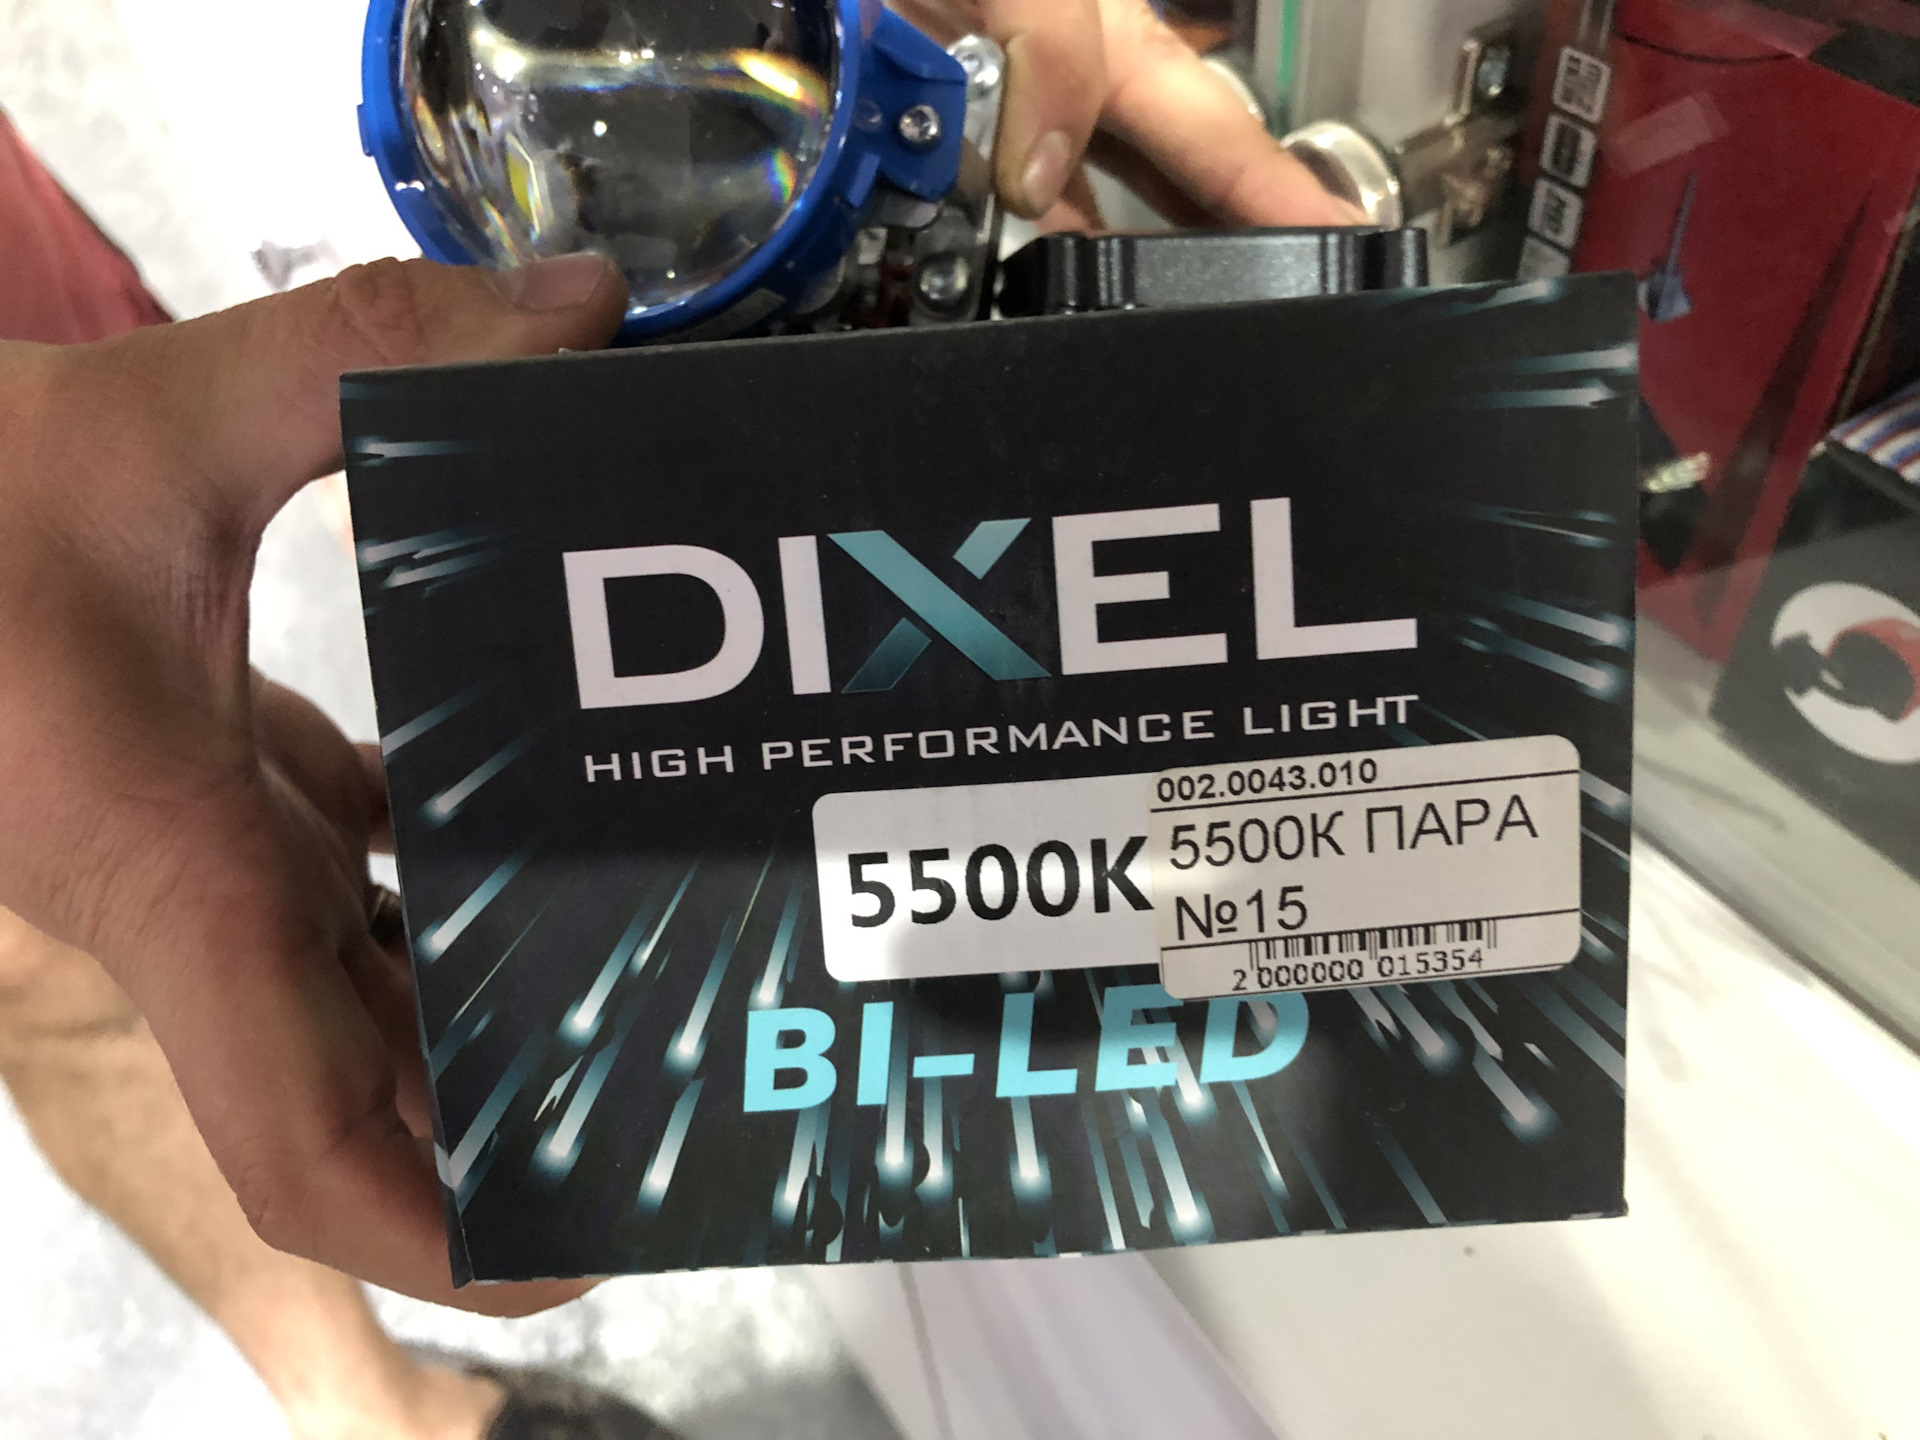 Bi led srt. Dixel GTR bi-led v 3.0 5500k. Dixel HPL New Night d2s 5500k. Dixel bi-led White Night dcl750. Dixel d3s 5500k.